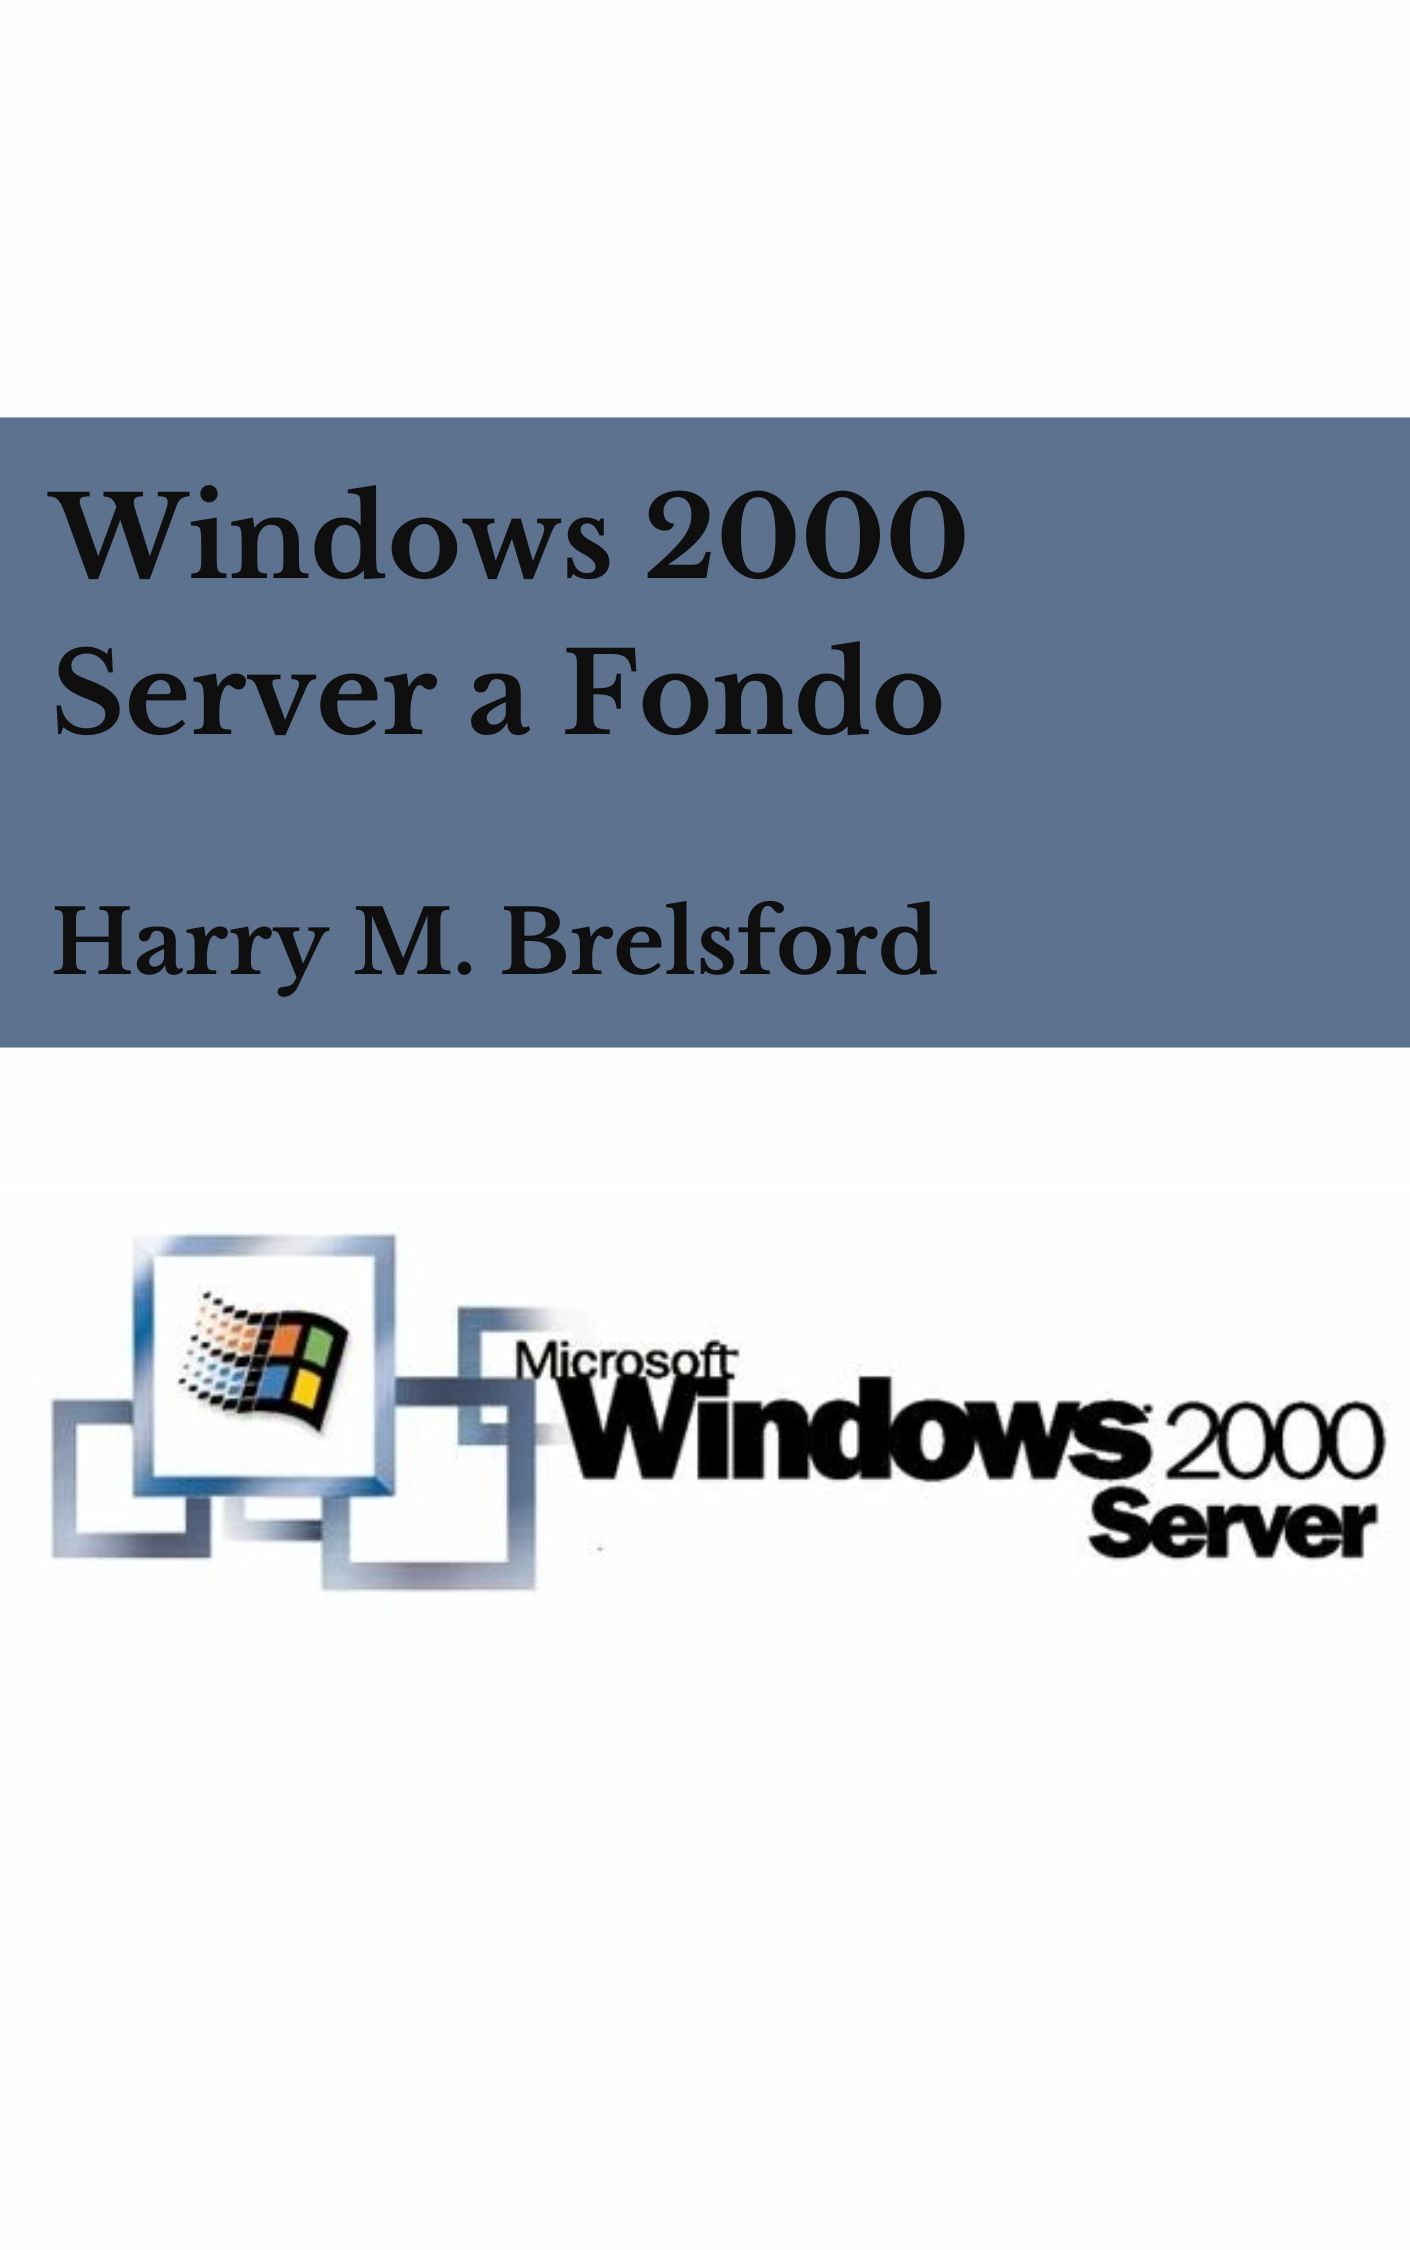 Libro: Windows 2000 Server a Fondo por Harry M. Brelsford